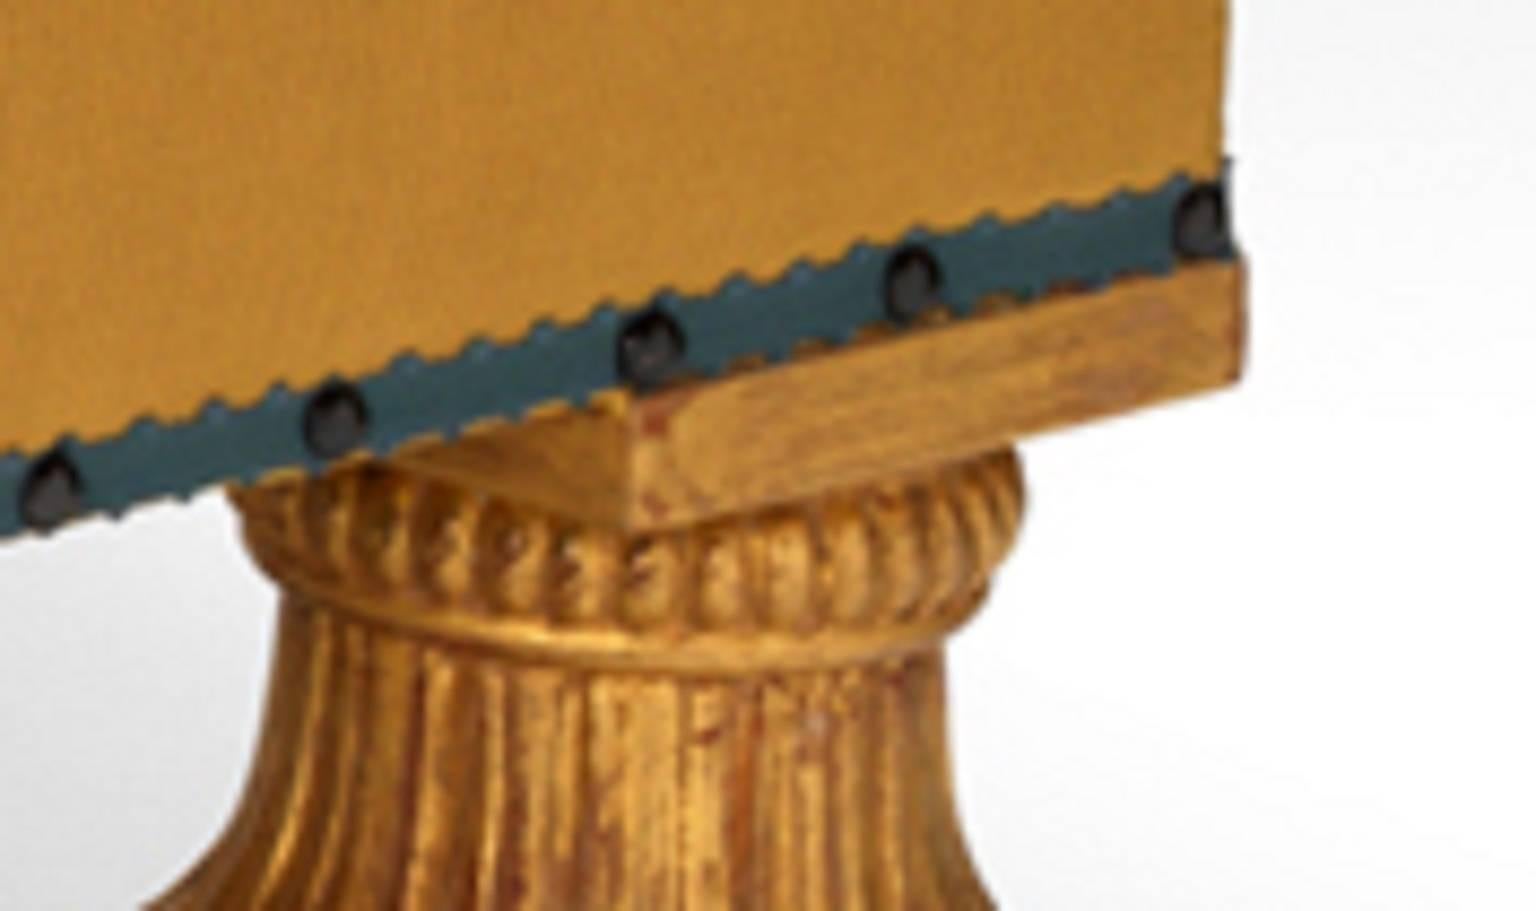 Ein geschnitzter Hocker aus vergoldetem Holz im Regency-Design, der von vier eleganten Ananasfüßen getragen wird. Gepolstert mit dem Material des Kunden.

Kann auch als Couchtisch oder als Hocker für das Schlafzimmer verwendet werden.

Dieser